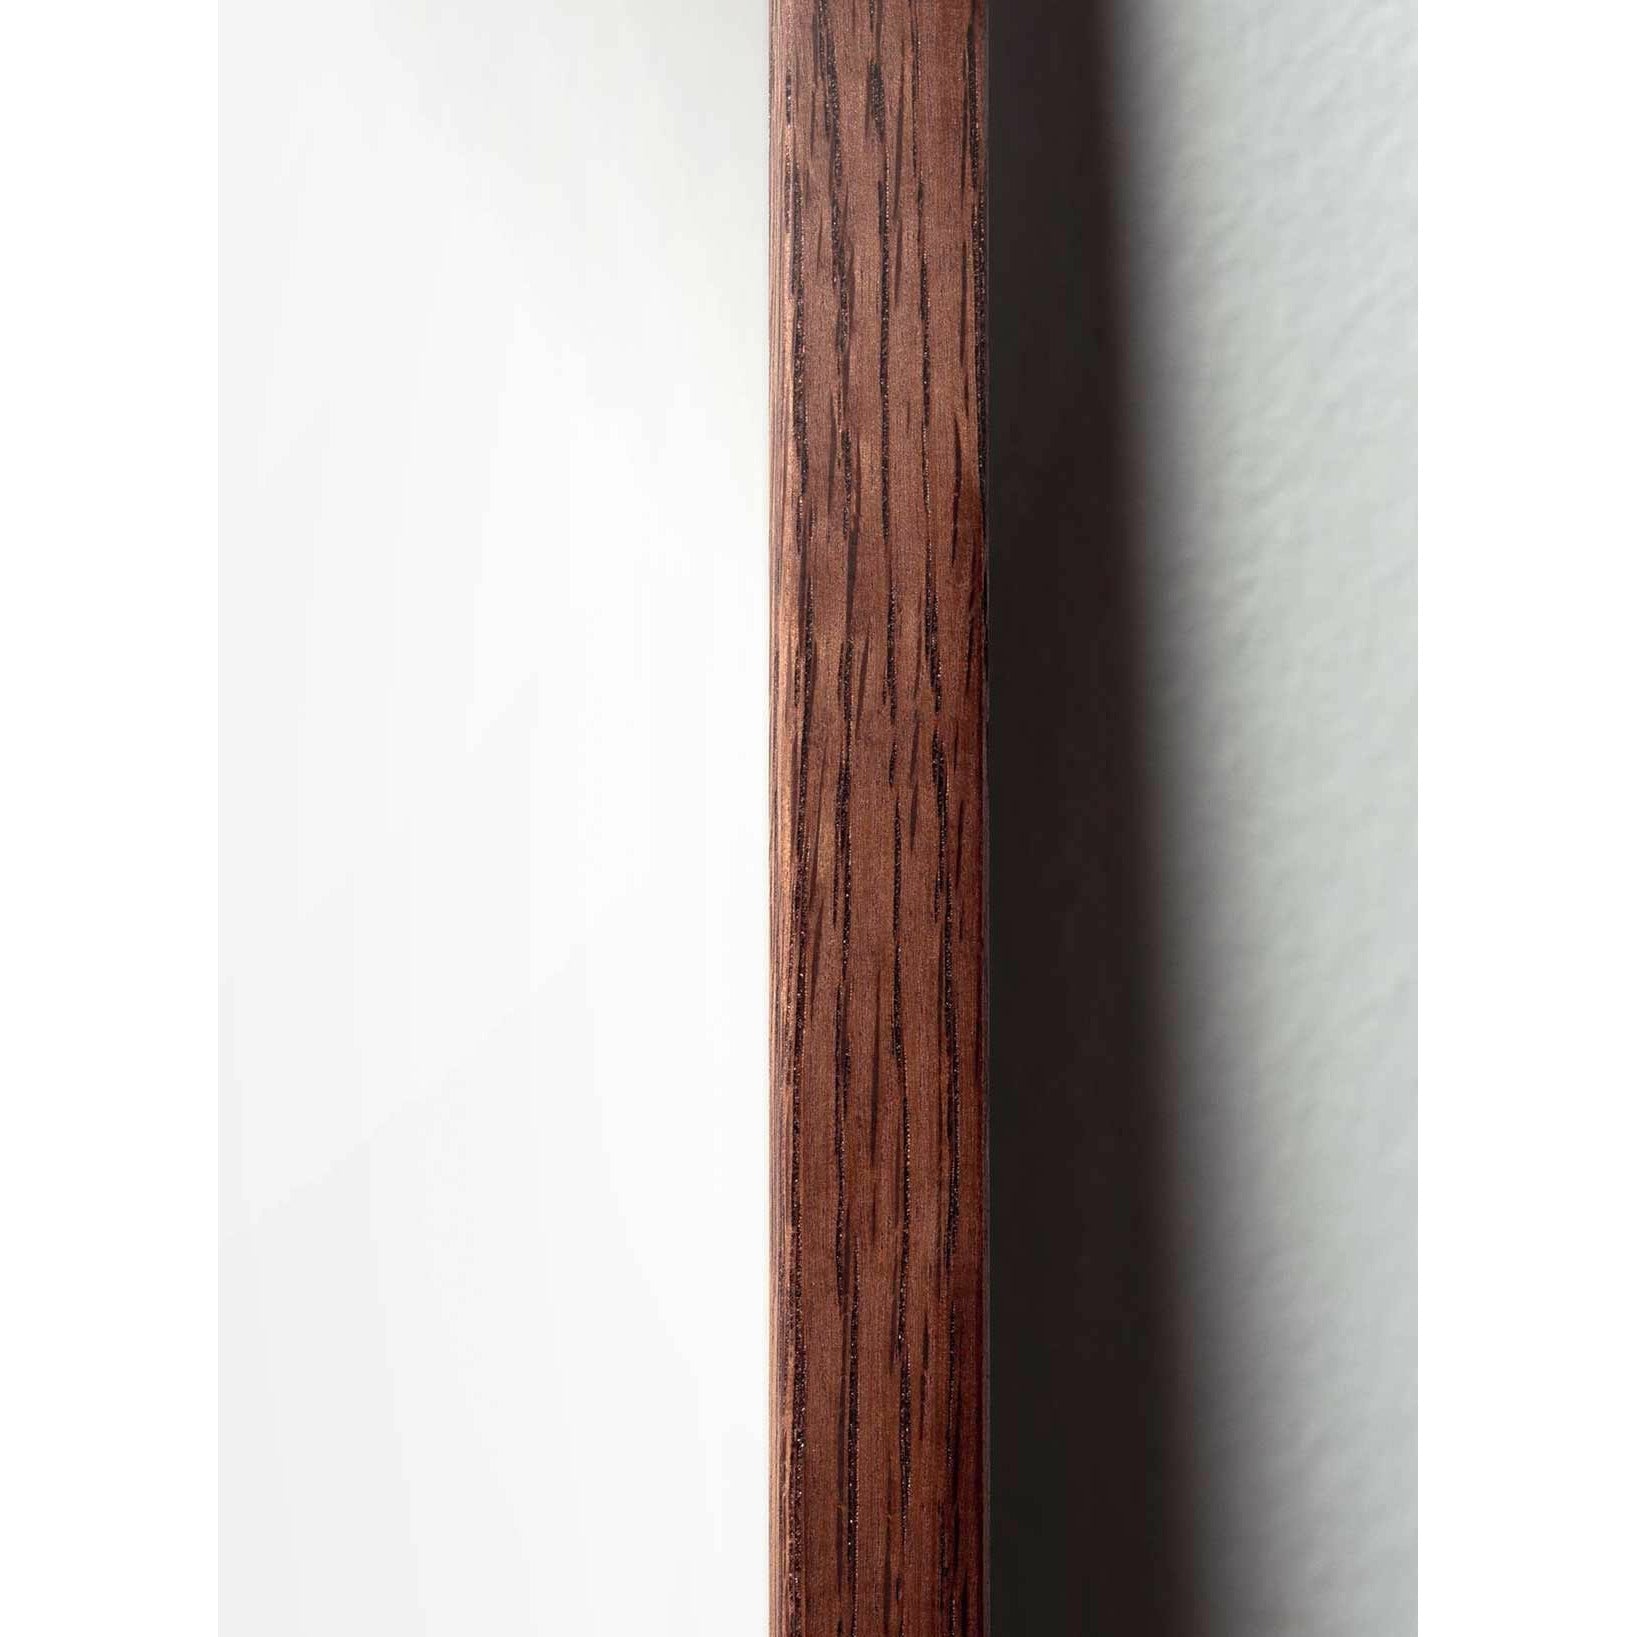 Poster di linea del cono di pino da un'idea, cornice in legno scuro 70x100 cm, sfondo bianco